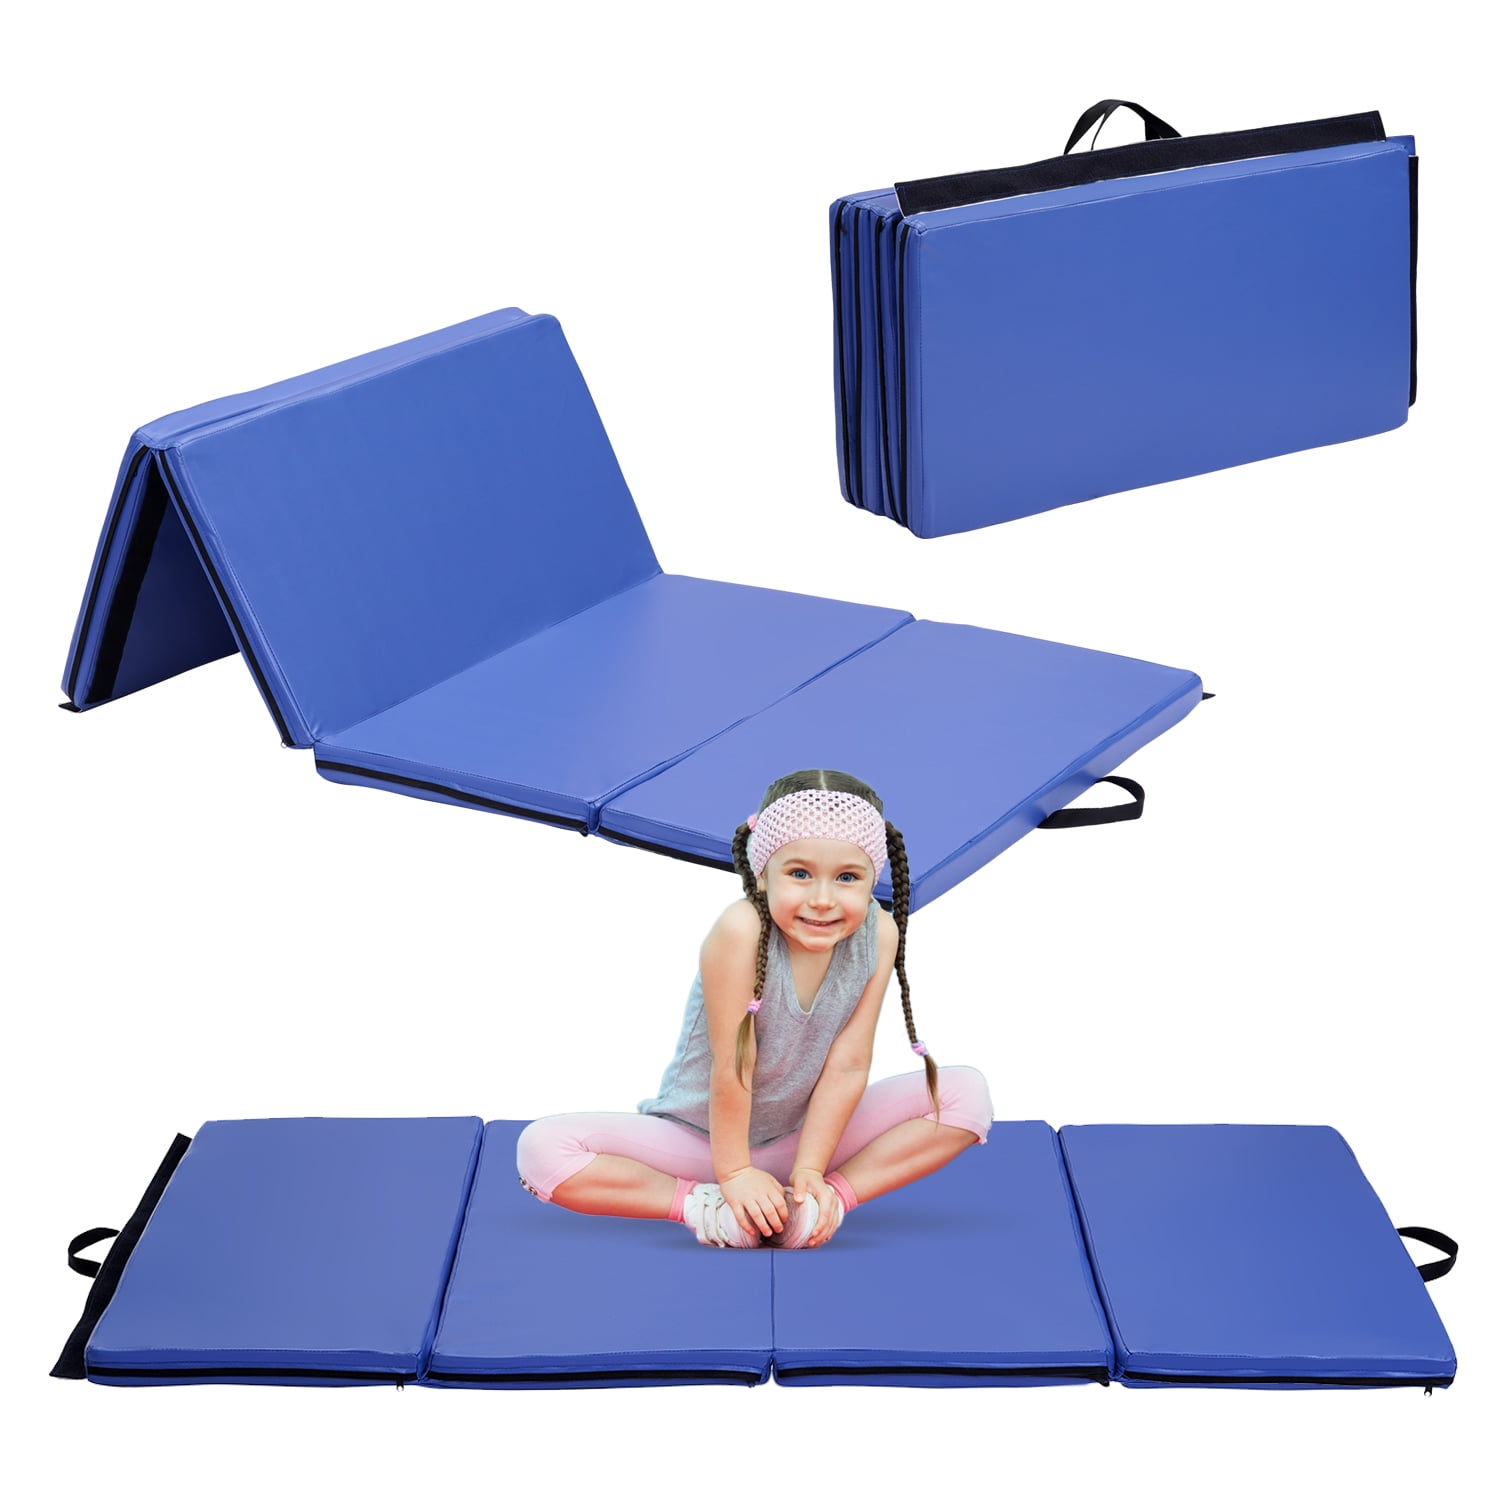 TSS x Stakt Yoga Mat: Foldable Exercise & Workout Mat – The Sculpt